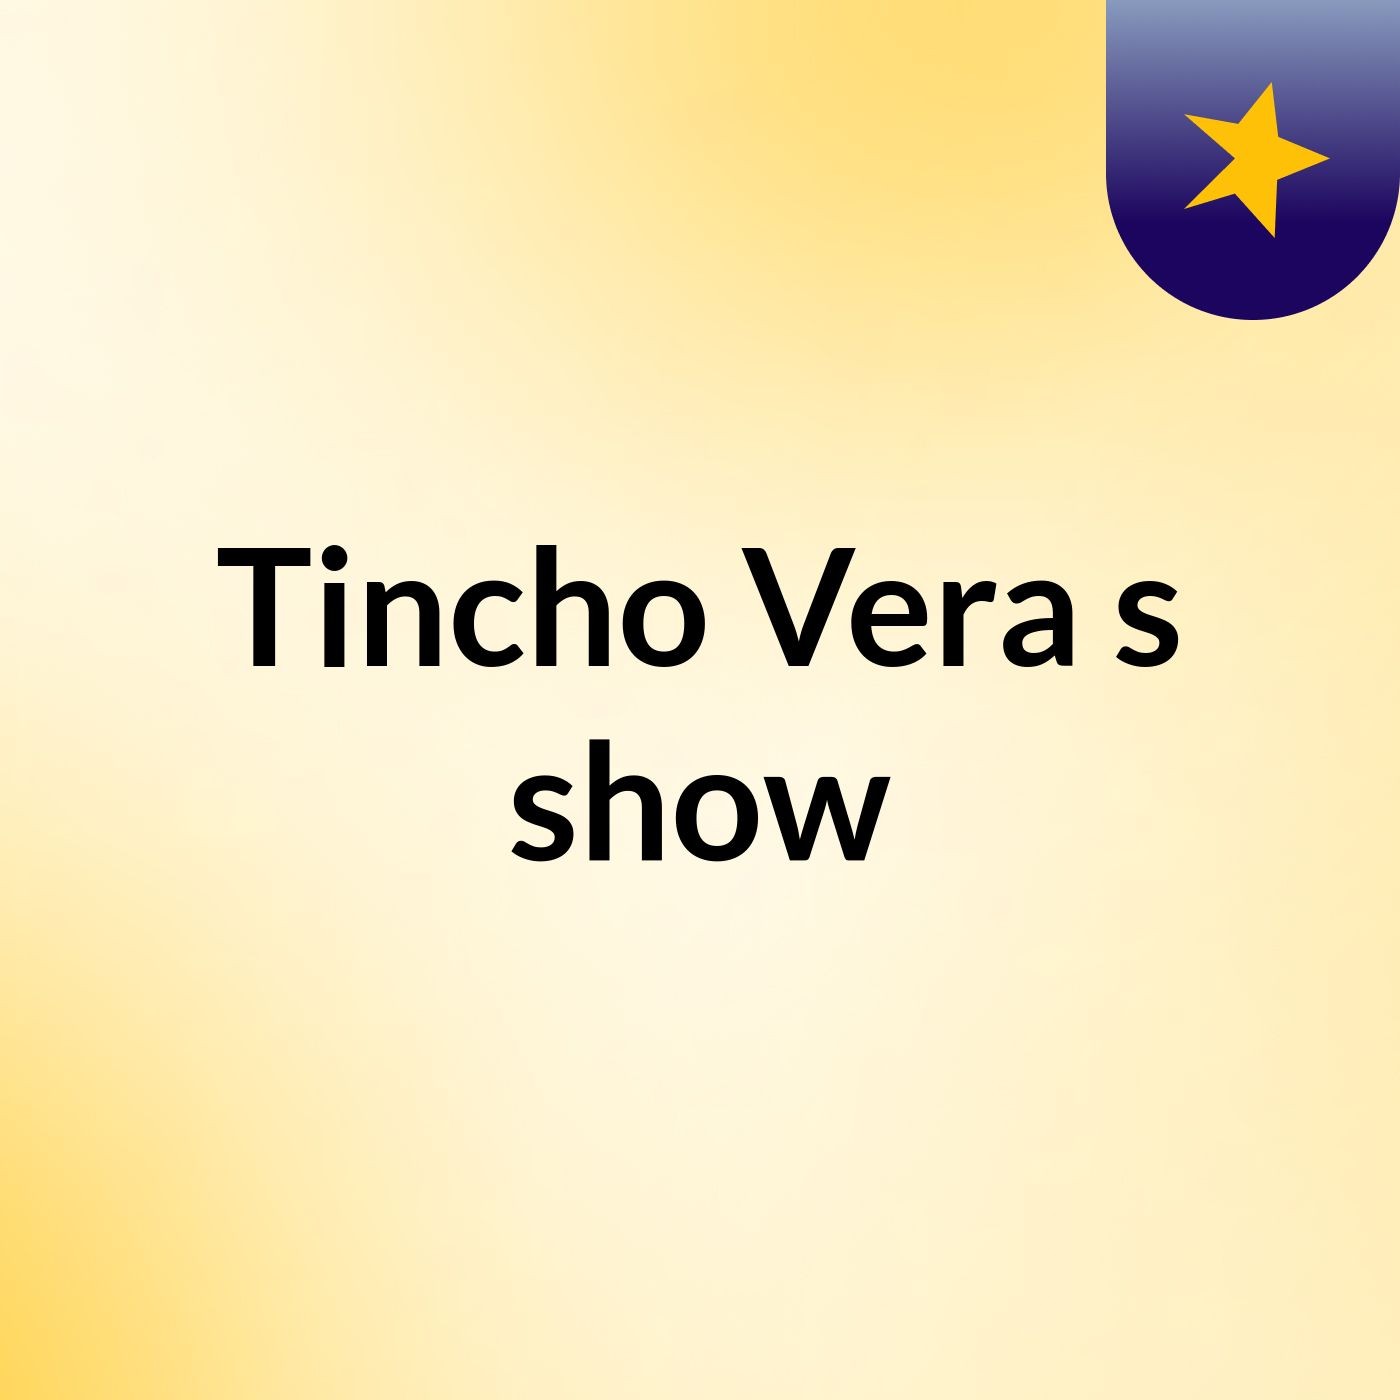 Tincho Vera's show